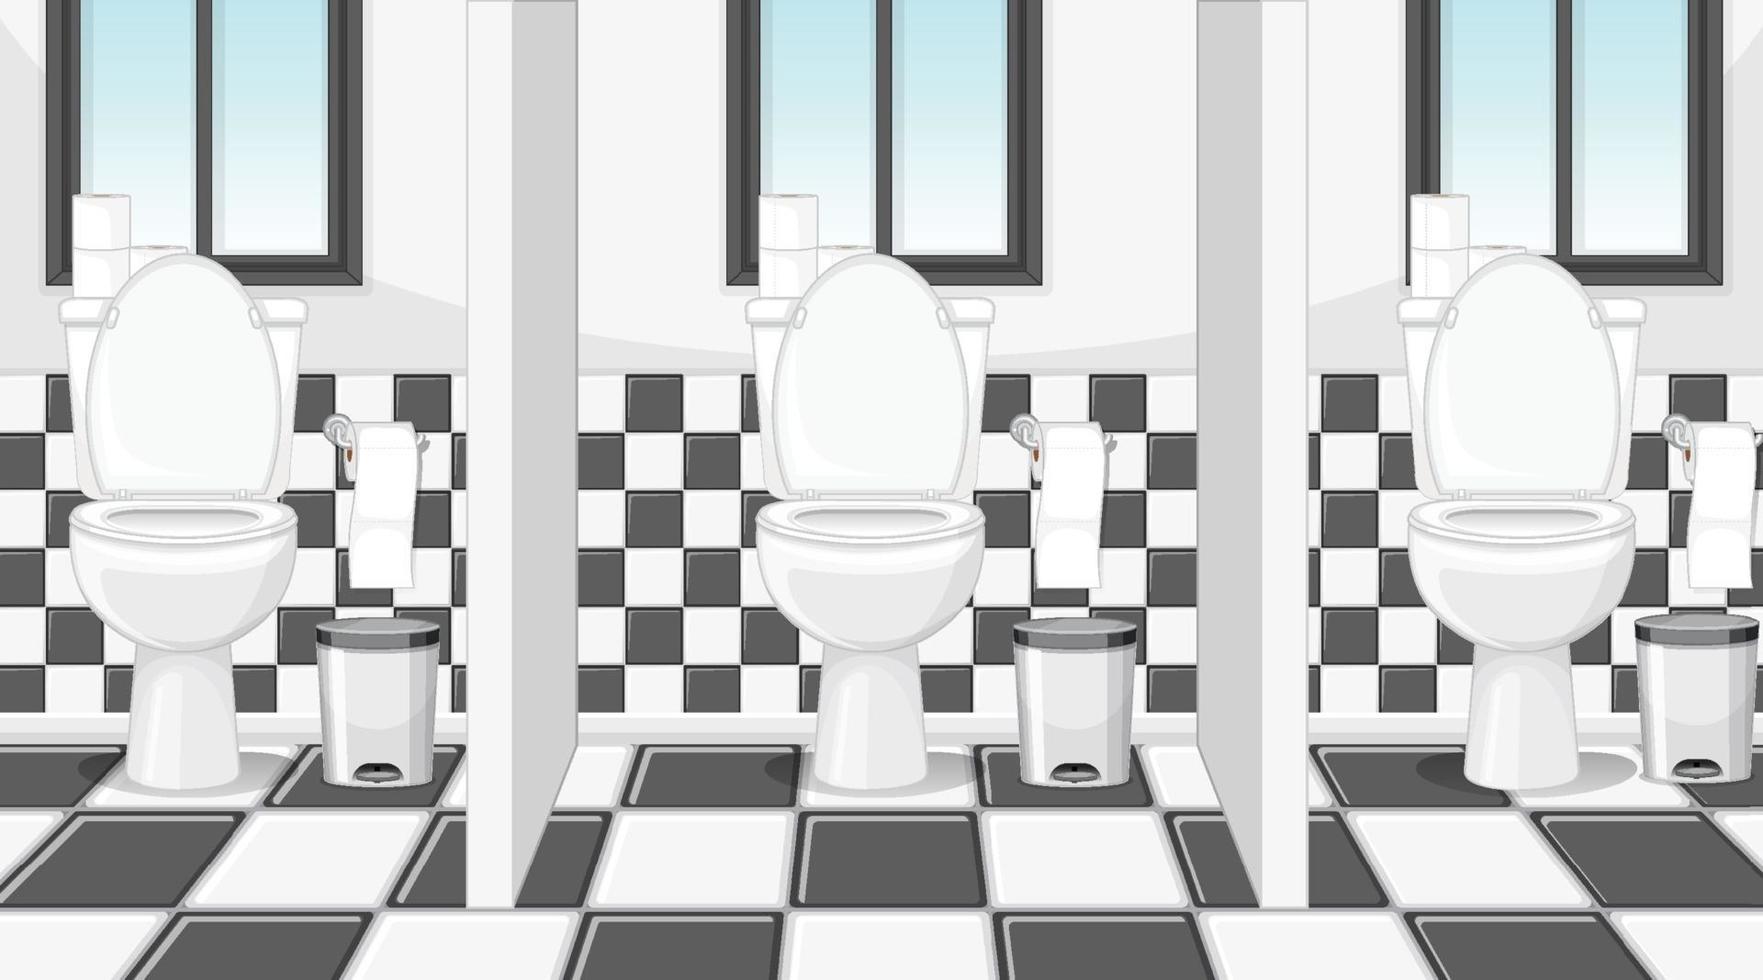 scène vide avec toilettes publiques avec cabines vecteur